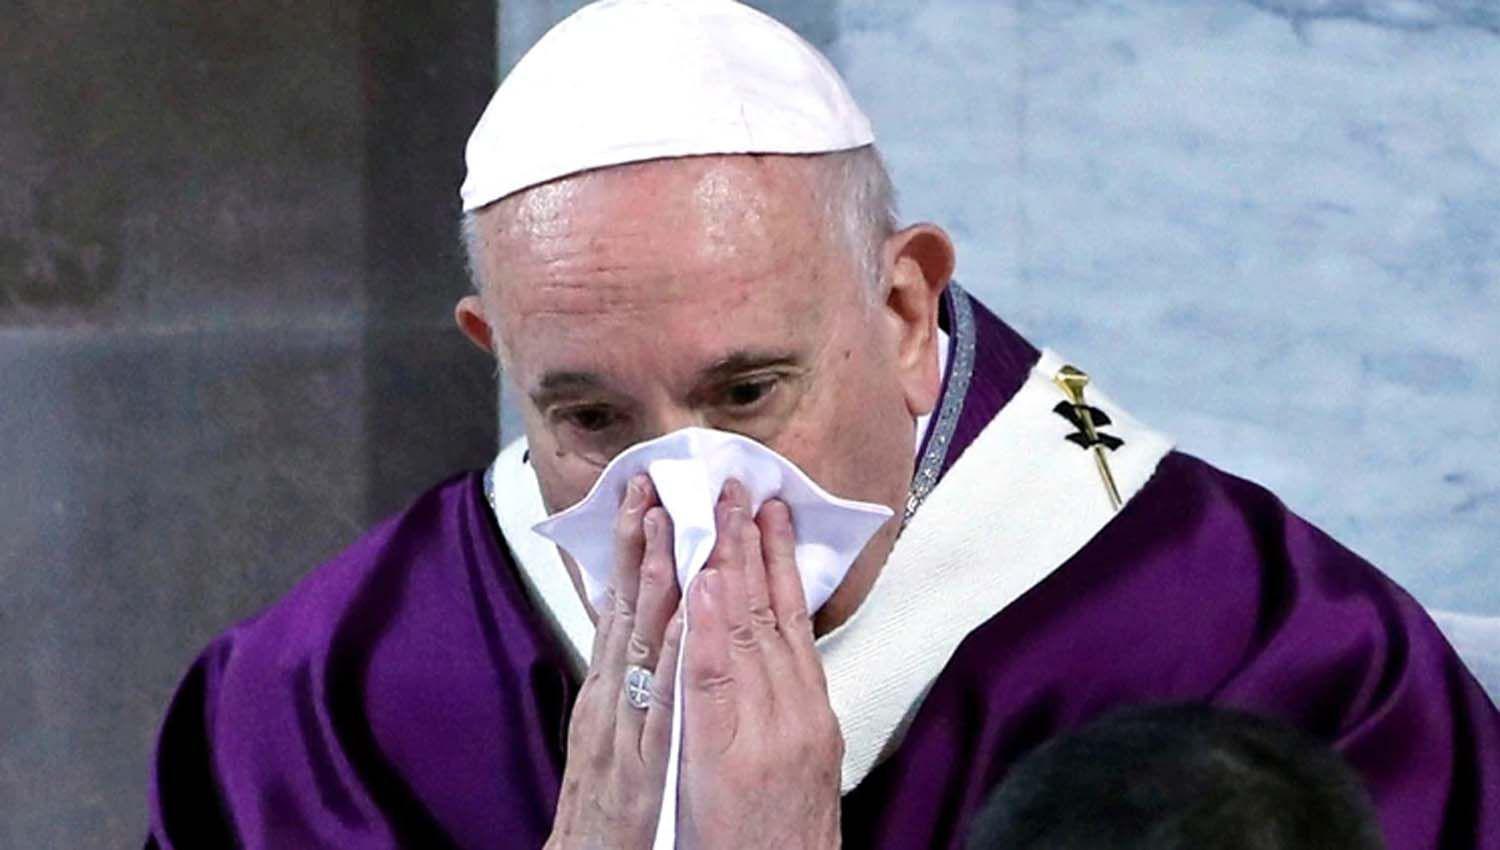 El Papa Francisco suspendioacute parte de su agenda por un resfriacuteo